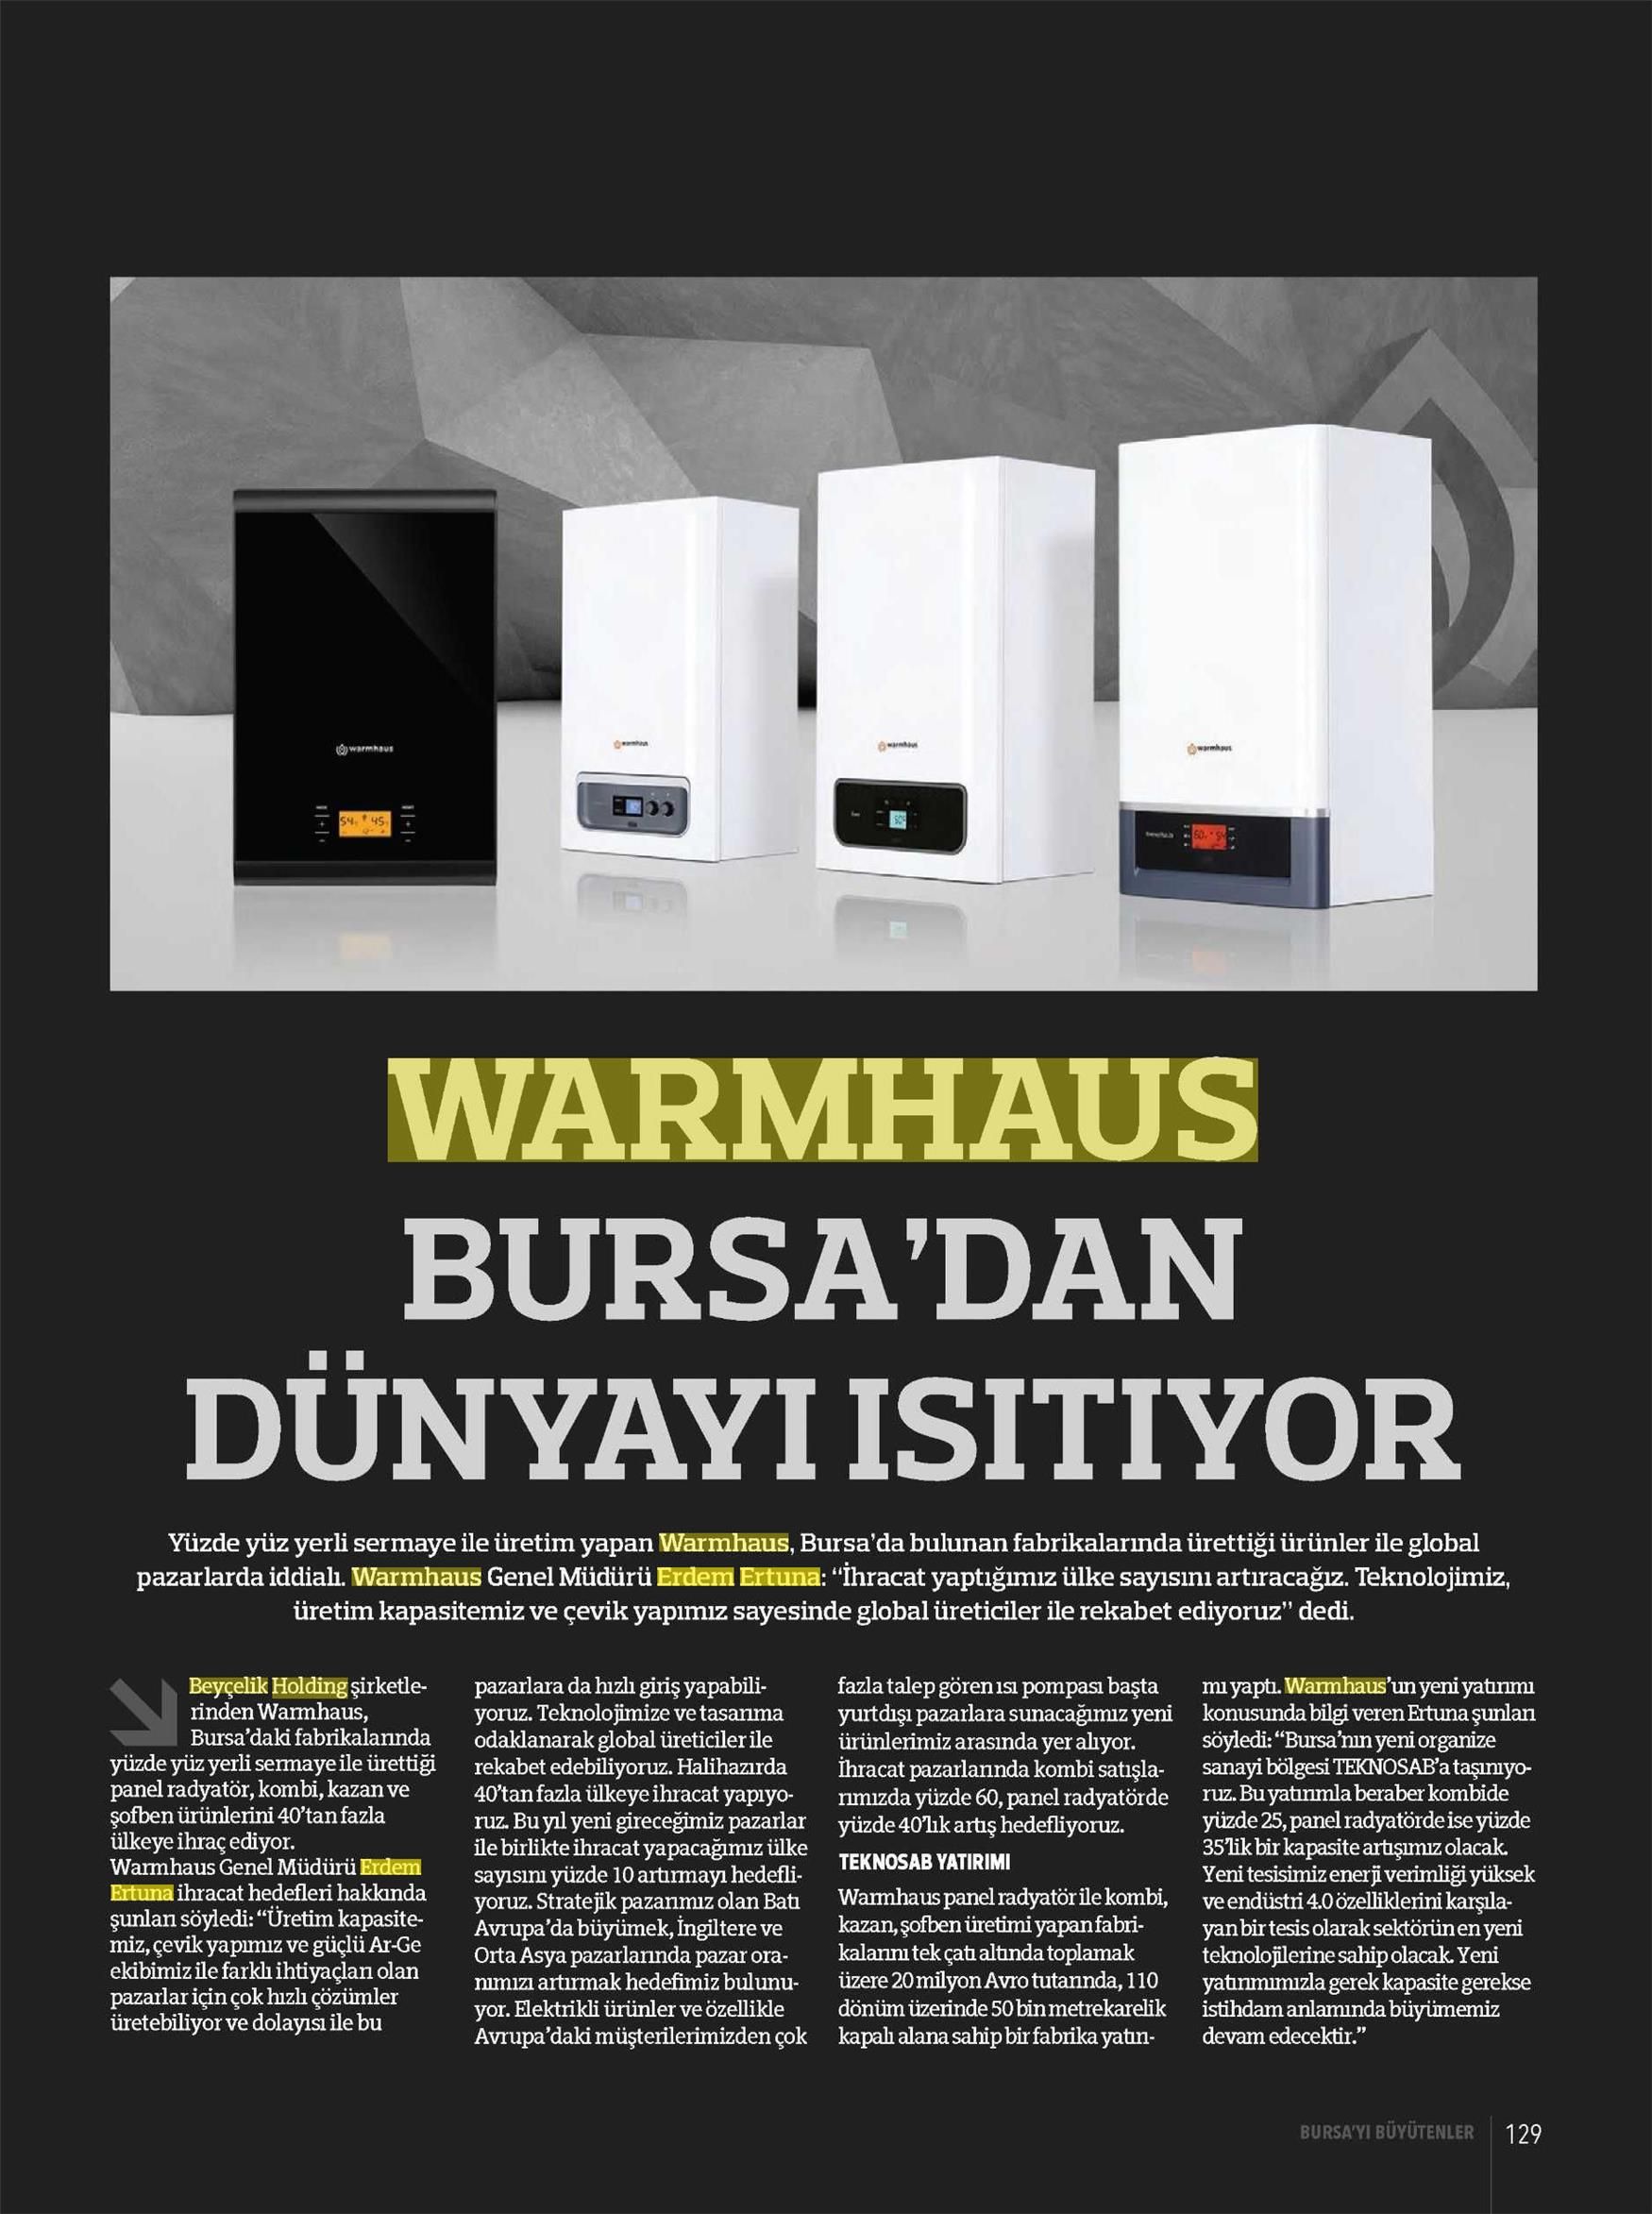 Warmhaus Bursa'dan Dünyayı Isıtıyor